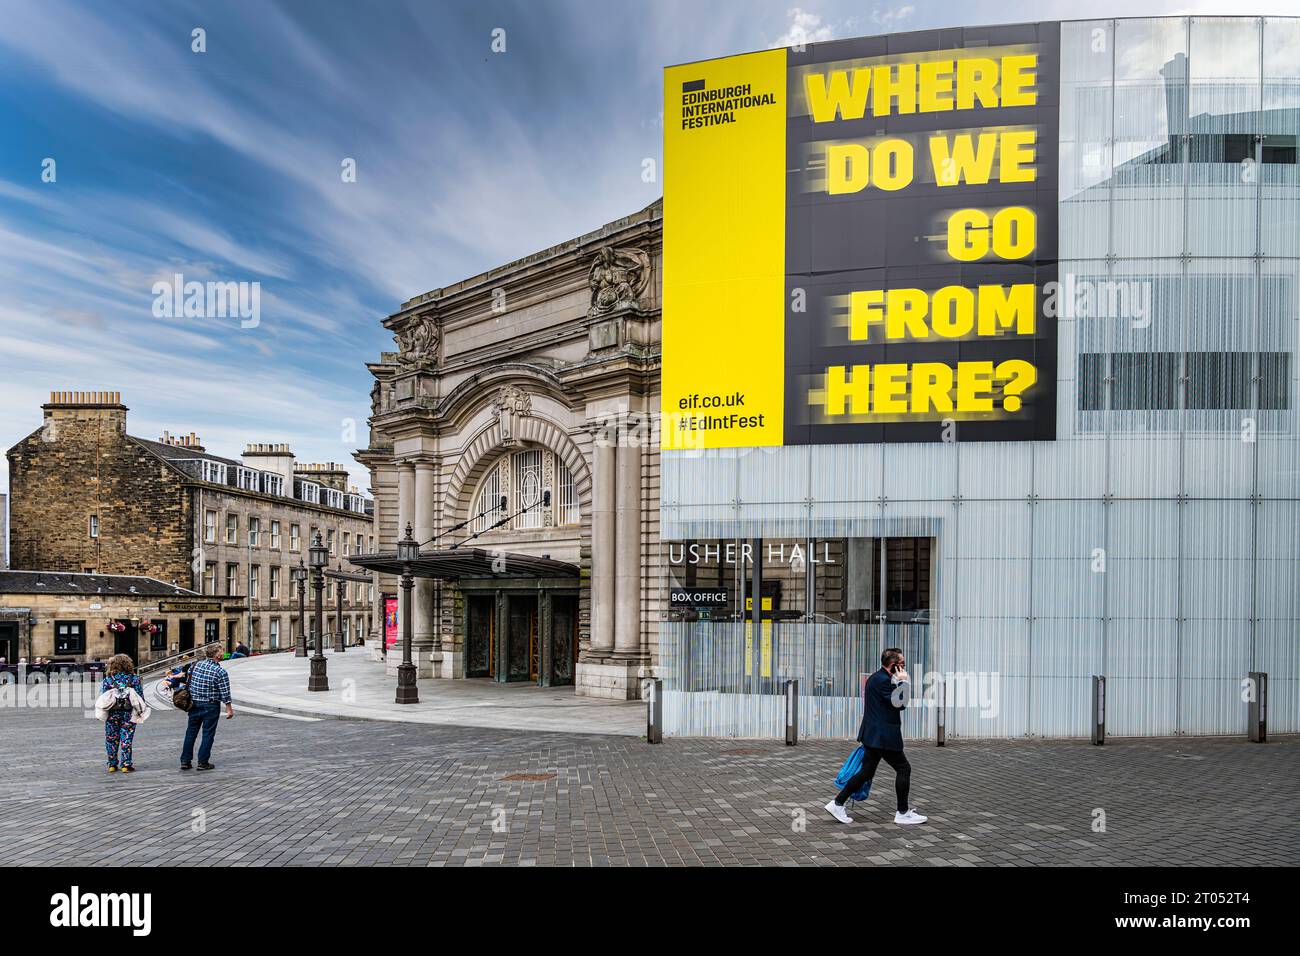 Entrée principale de Usher Hall pendant le festival international d'Édimbourg avec slogan de 2023 Where do We Go from Here?, Écosse, Royaume-Uni Banque D'Images